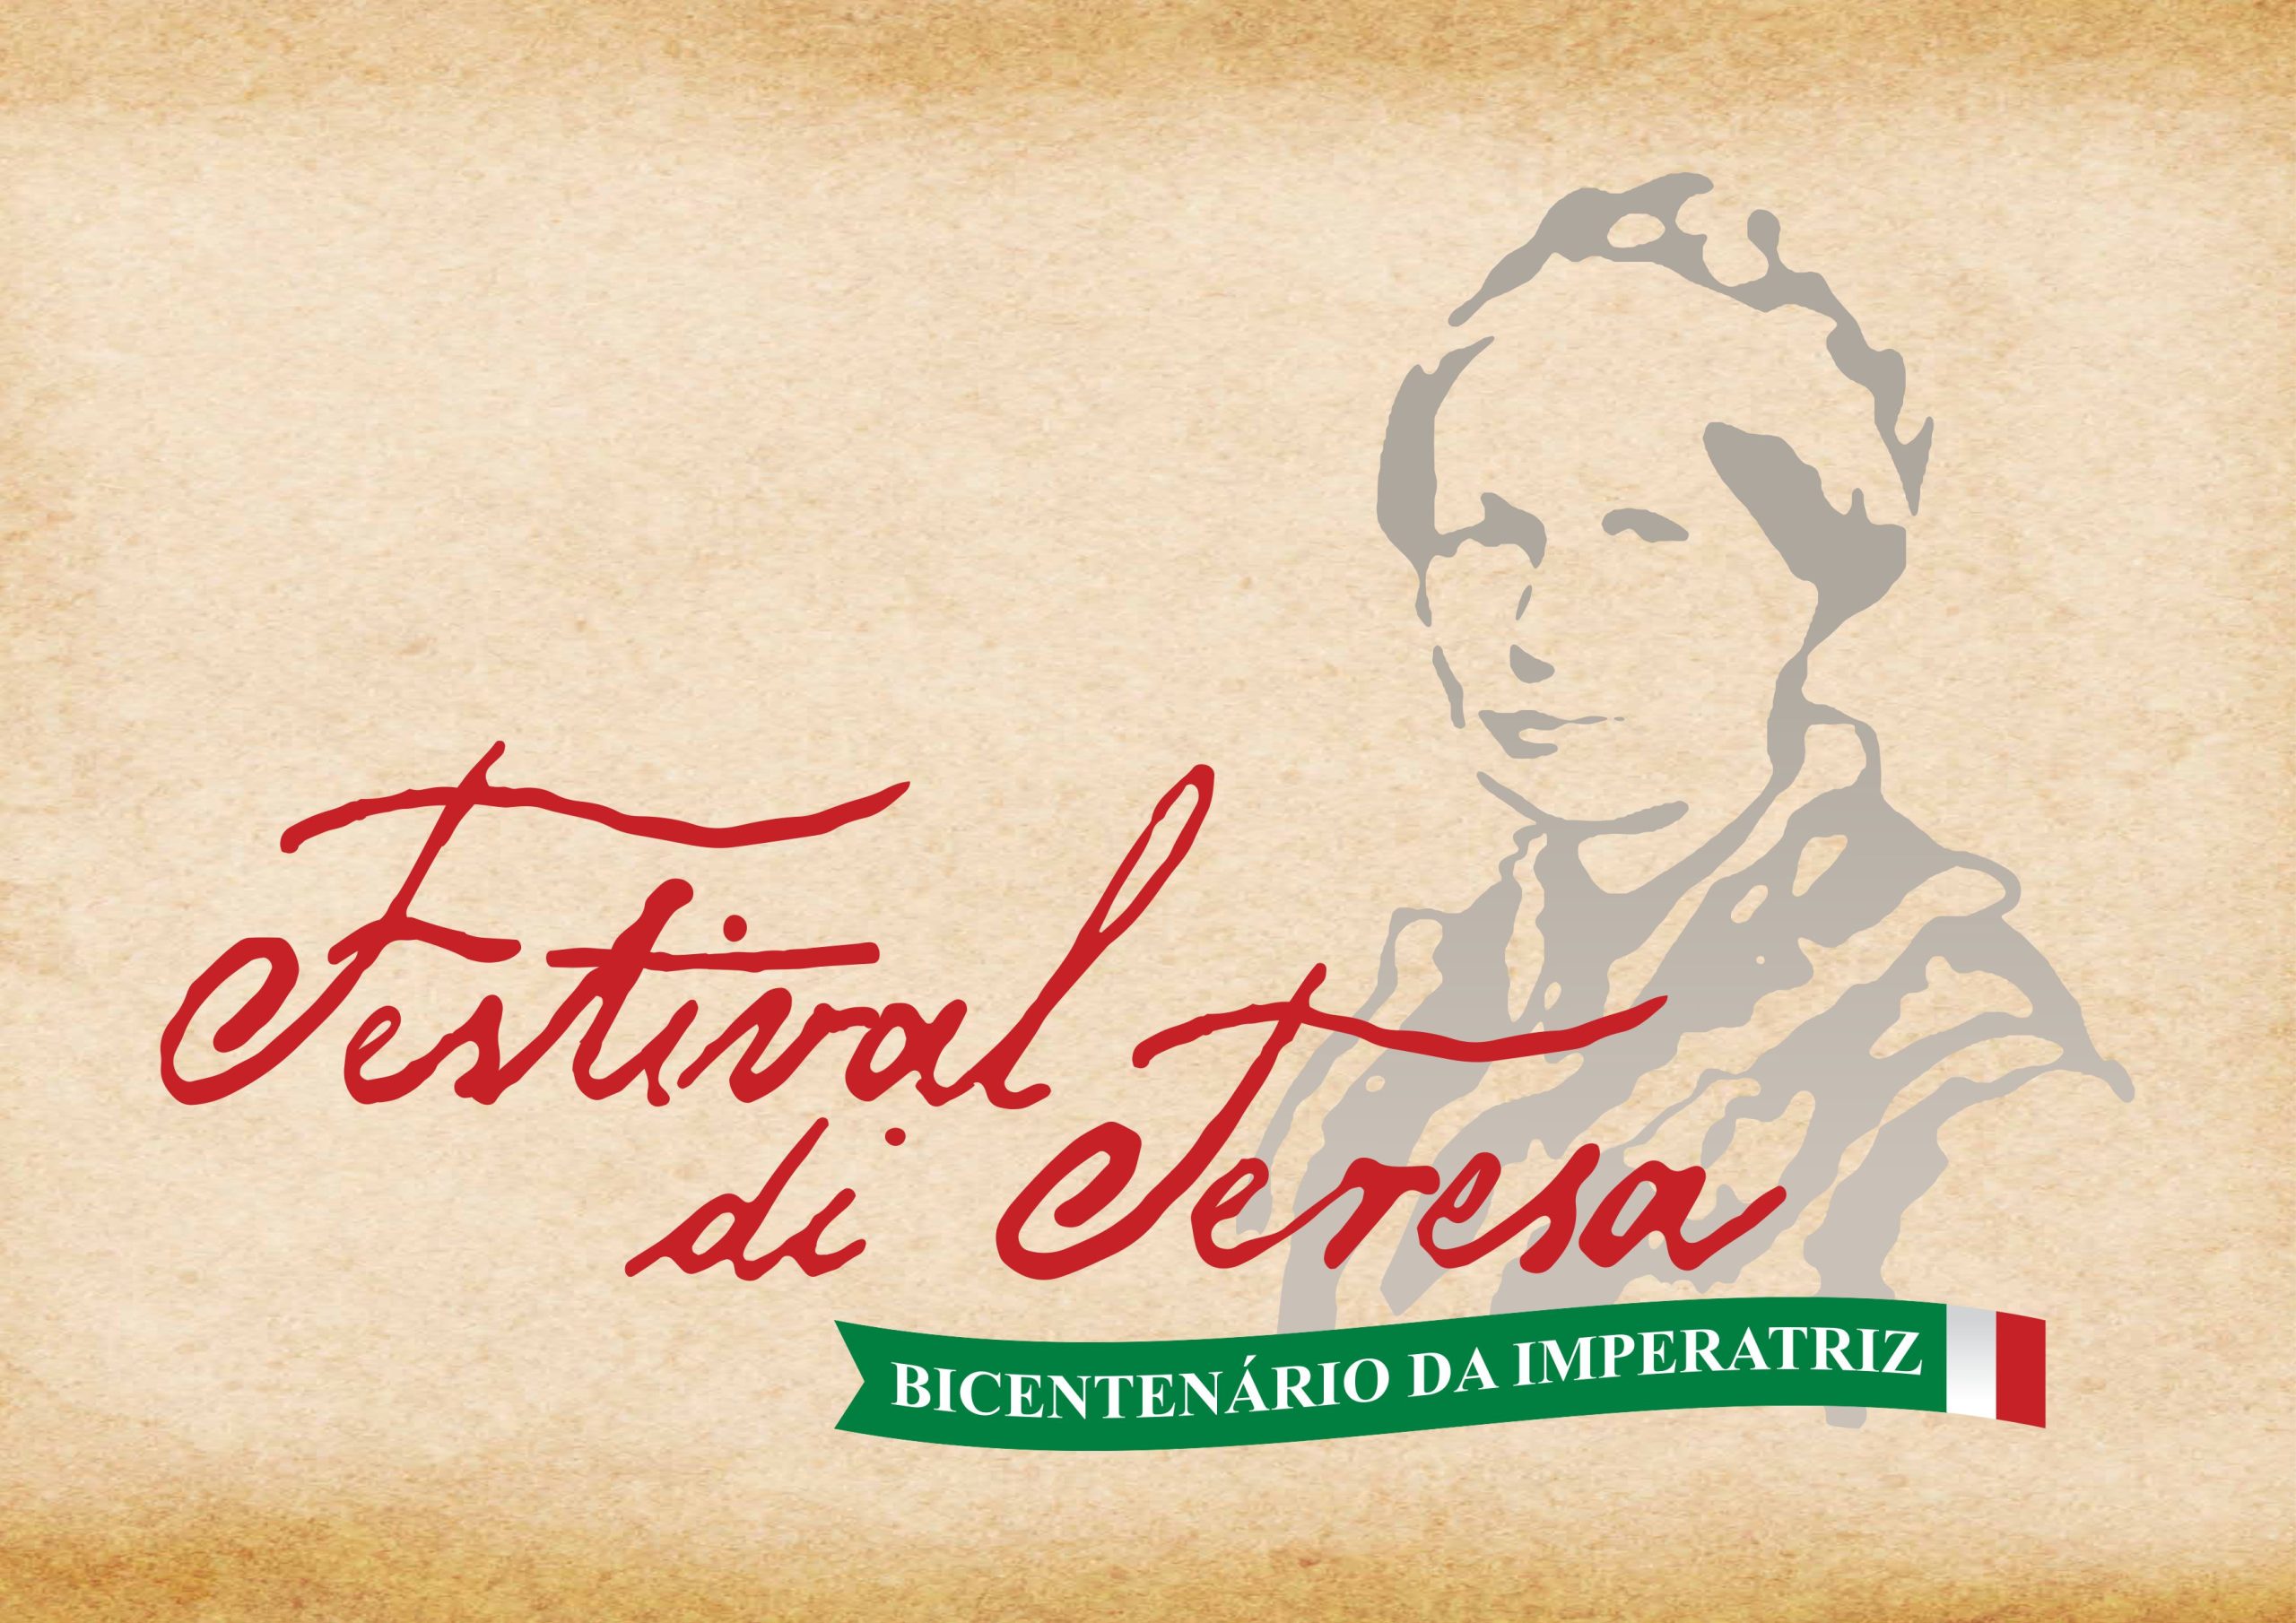 Você está visualizando atualmente Cultura e entretenimento: ‘Festival di Teresa’ celebra bicentenário da Imperatriz Teresa Cristina em Teresópolis